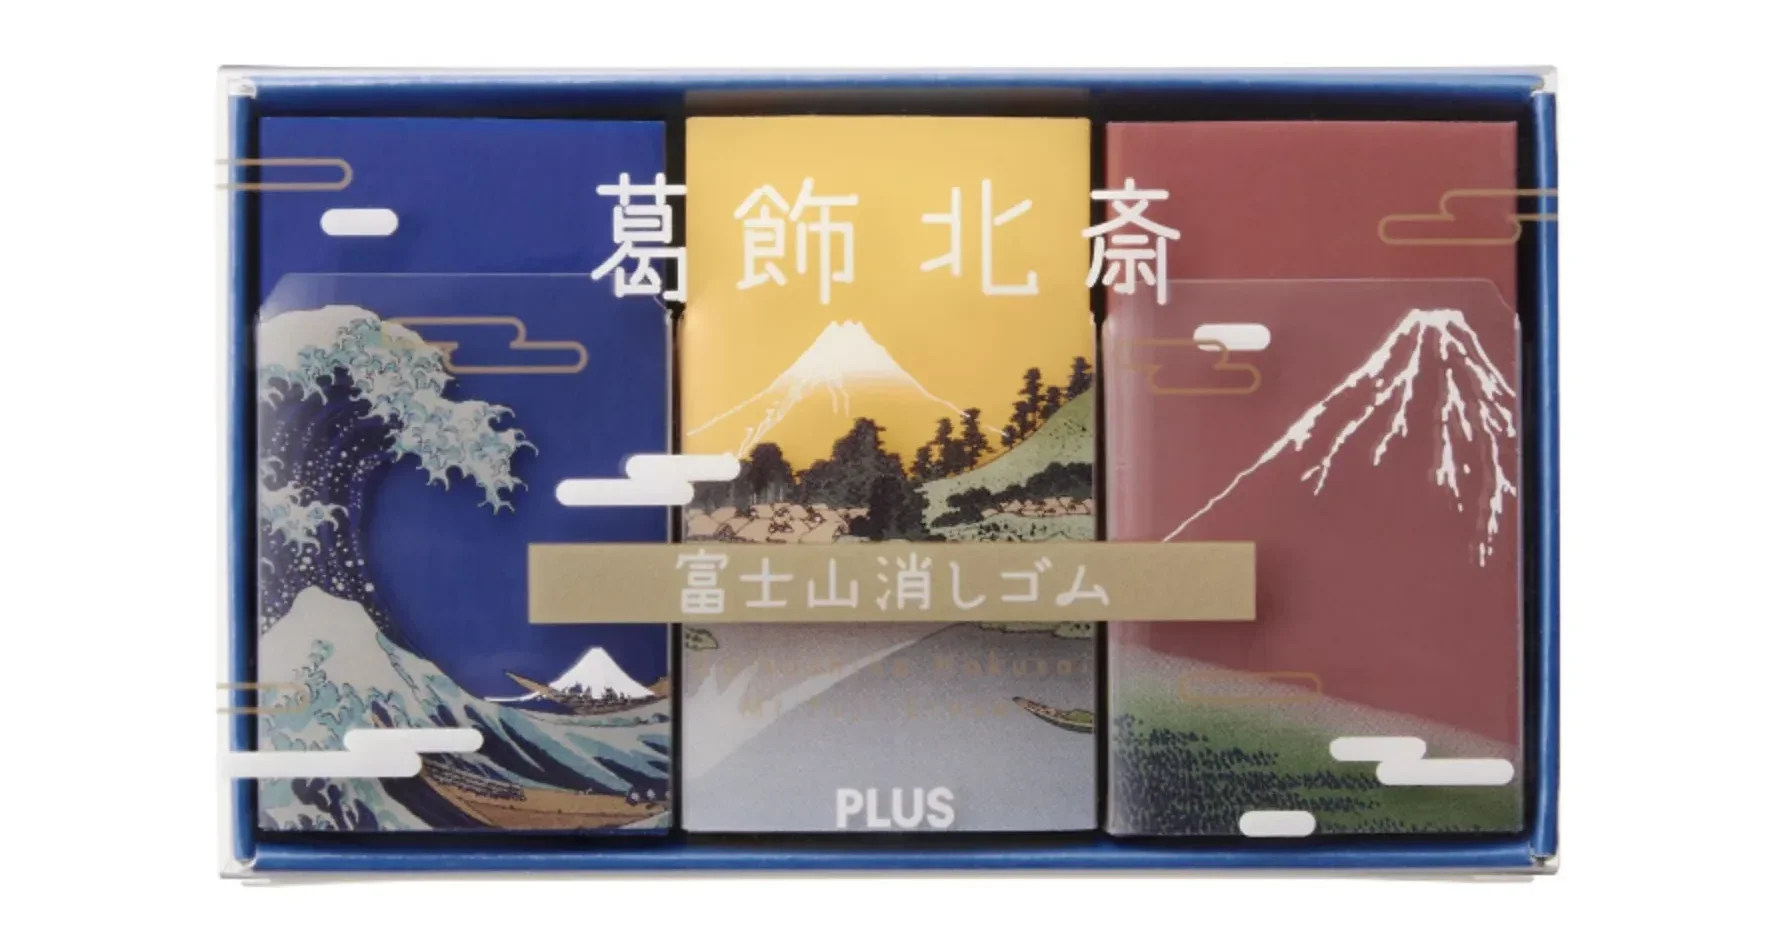 ยางลบฟูจิซัง วิวภูเขาไฟฟูจิ mount fuji eraser